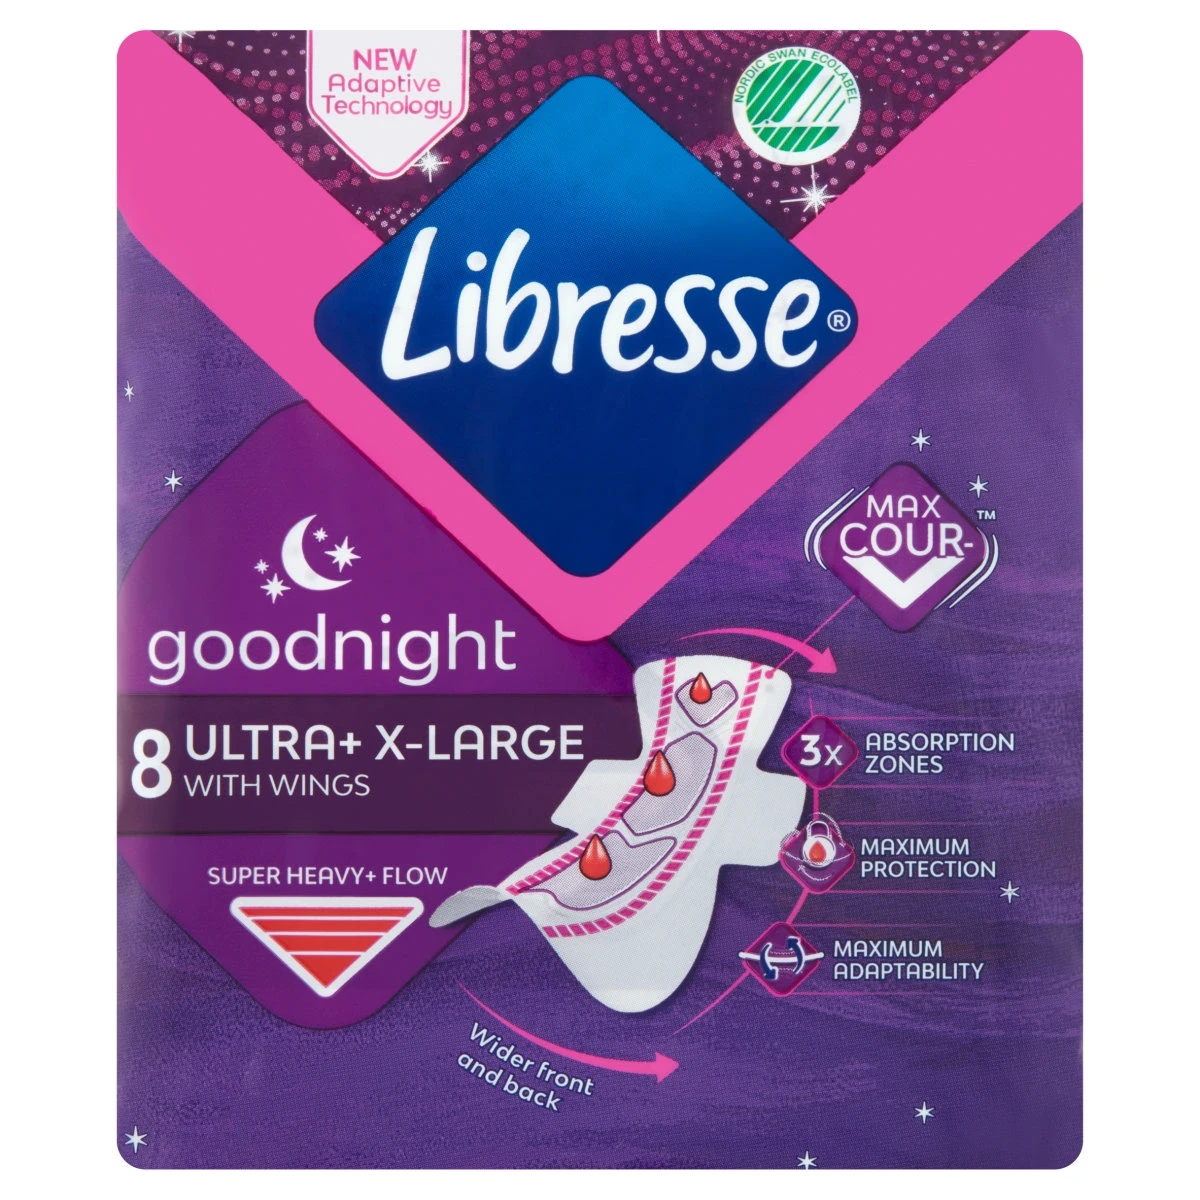 Libresse Ultra+ Goodnight Extra Large szárnyas egészségügyi betét, éjszakai használatra 8 db